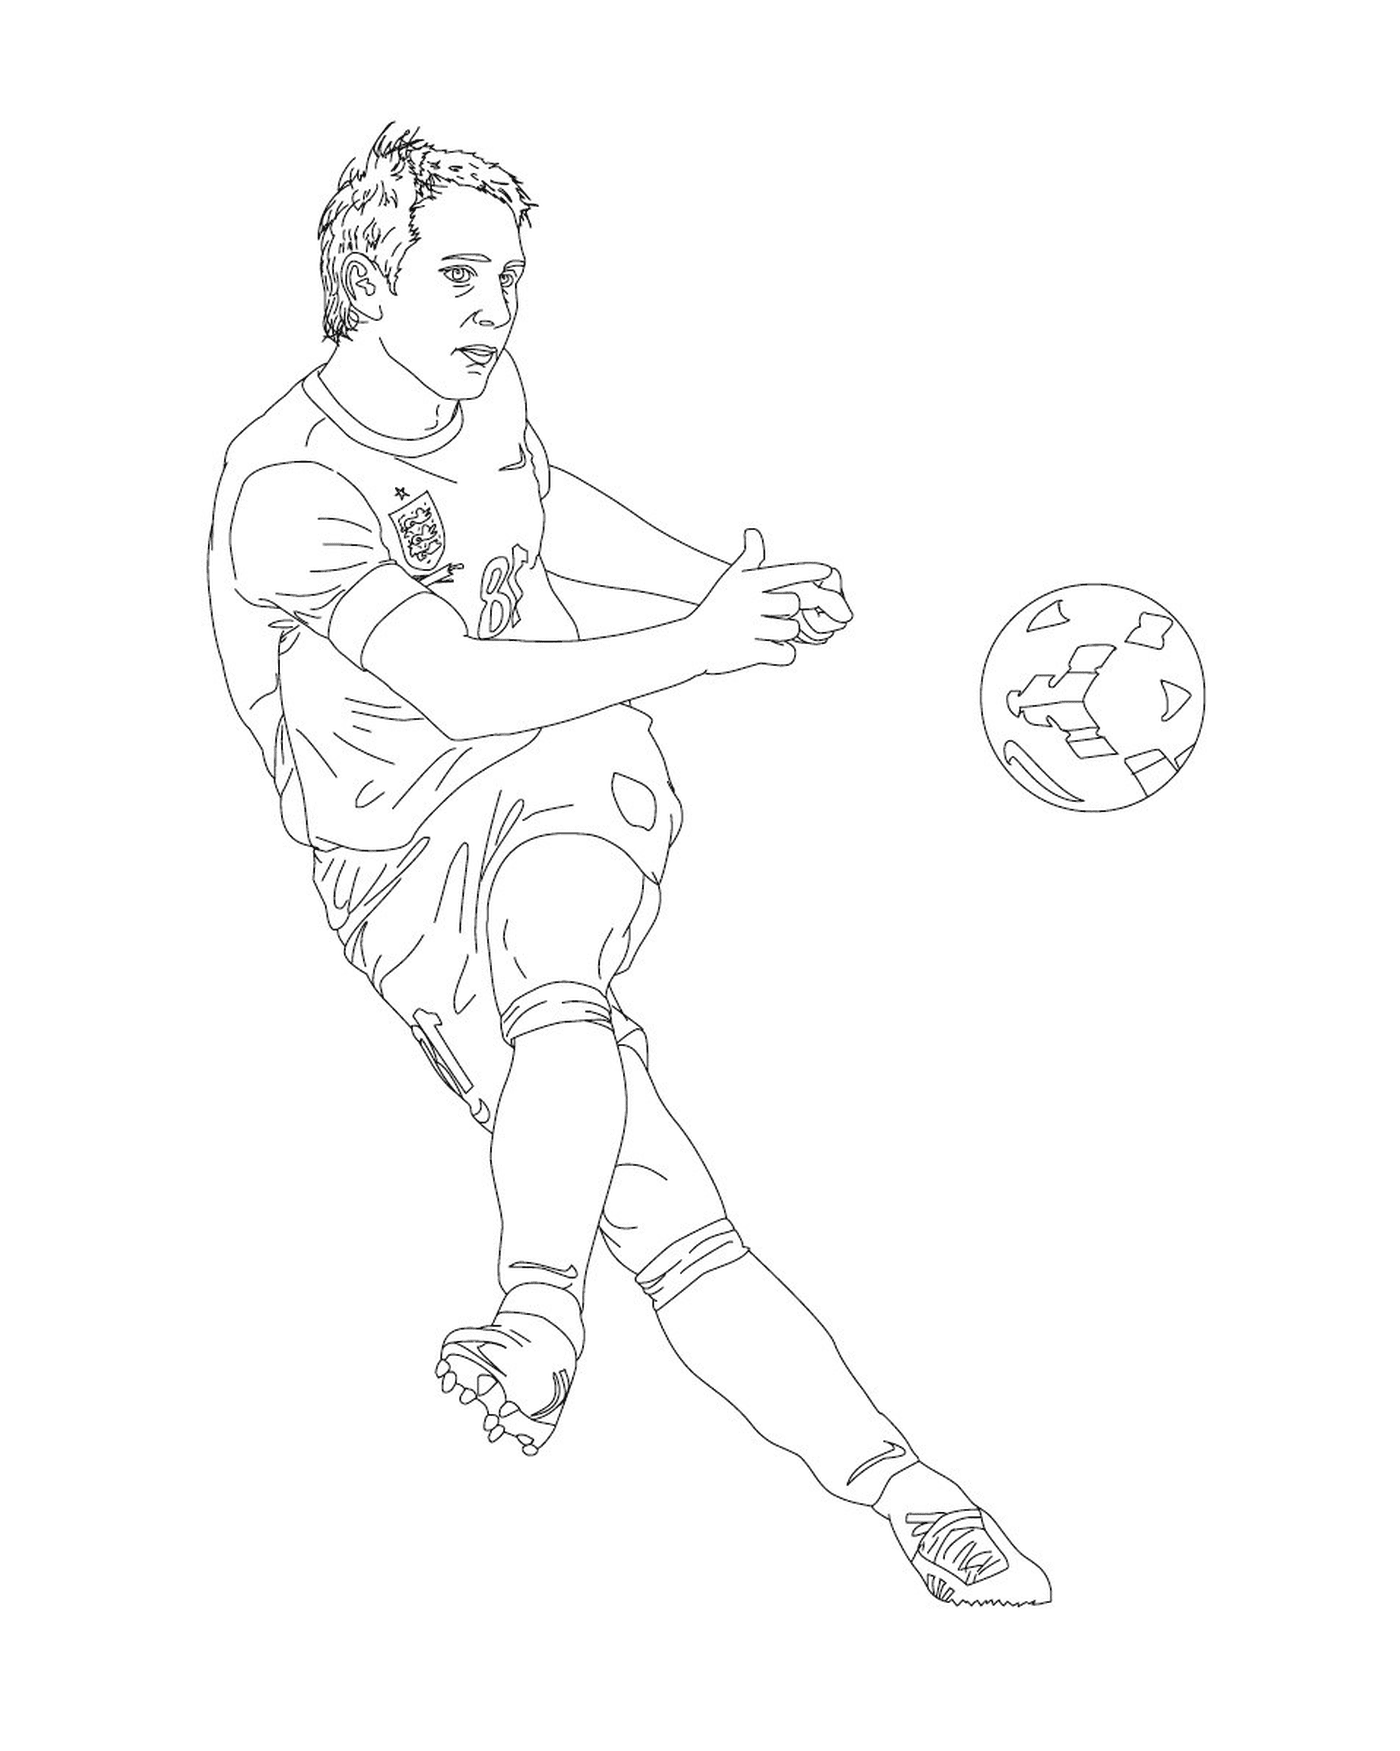  Un hombre pateando en una pelota de fútbol en un campo 